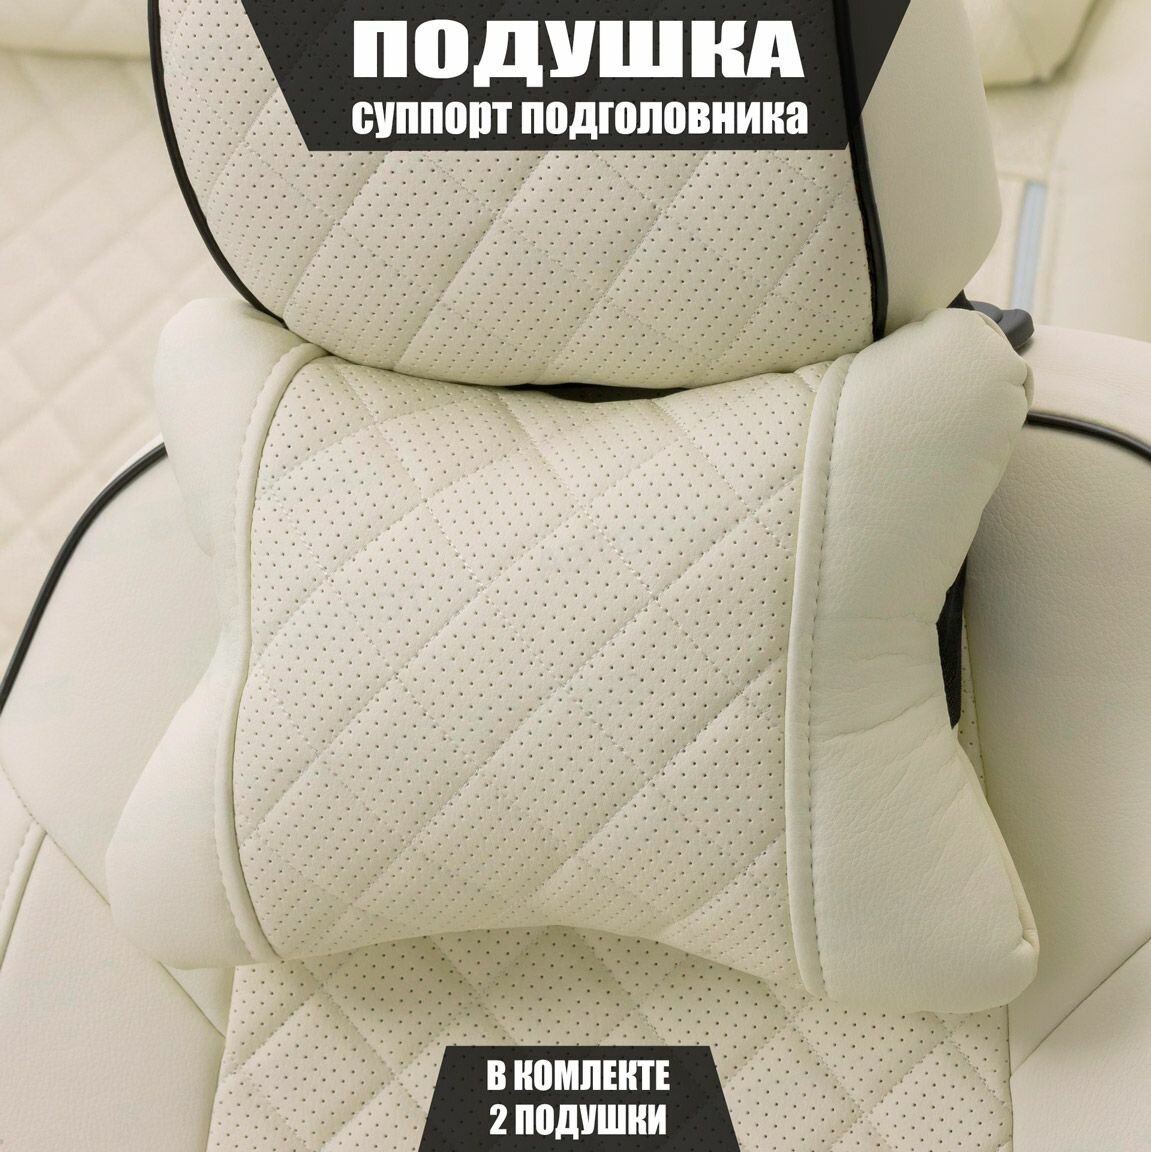 Подушки под шею (суппорт подголовника) для Форд Фокус (2014 - 2019) хэтчбек 5 дверей / Ford Focus, Ромб, Экокожа, 2 подушки, Белый